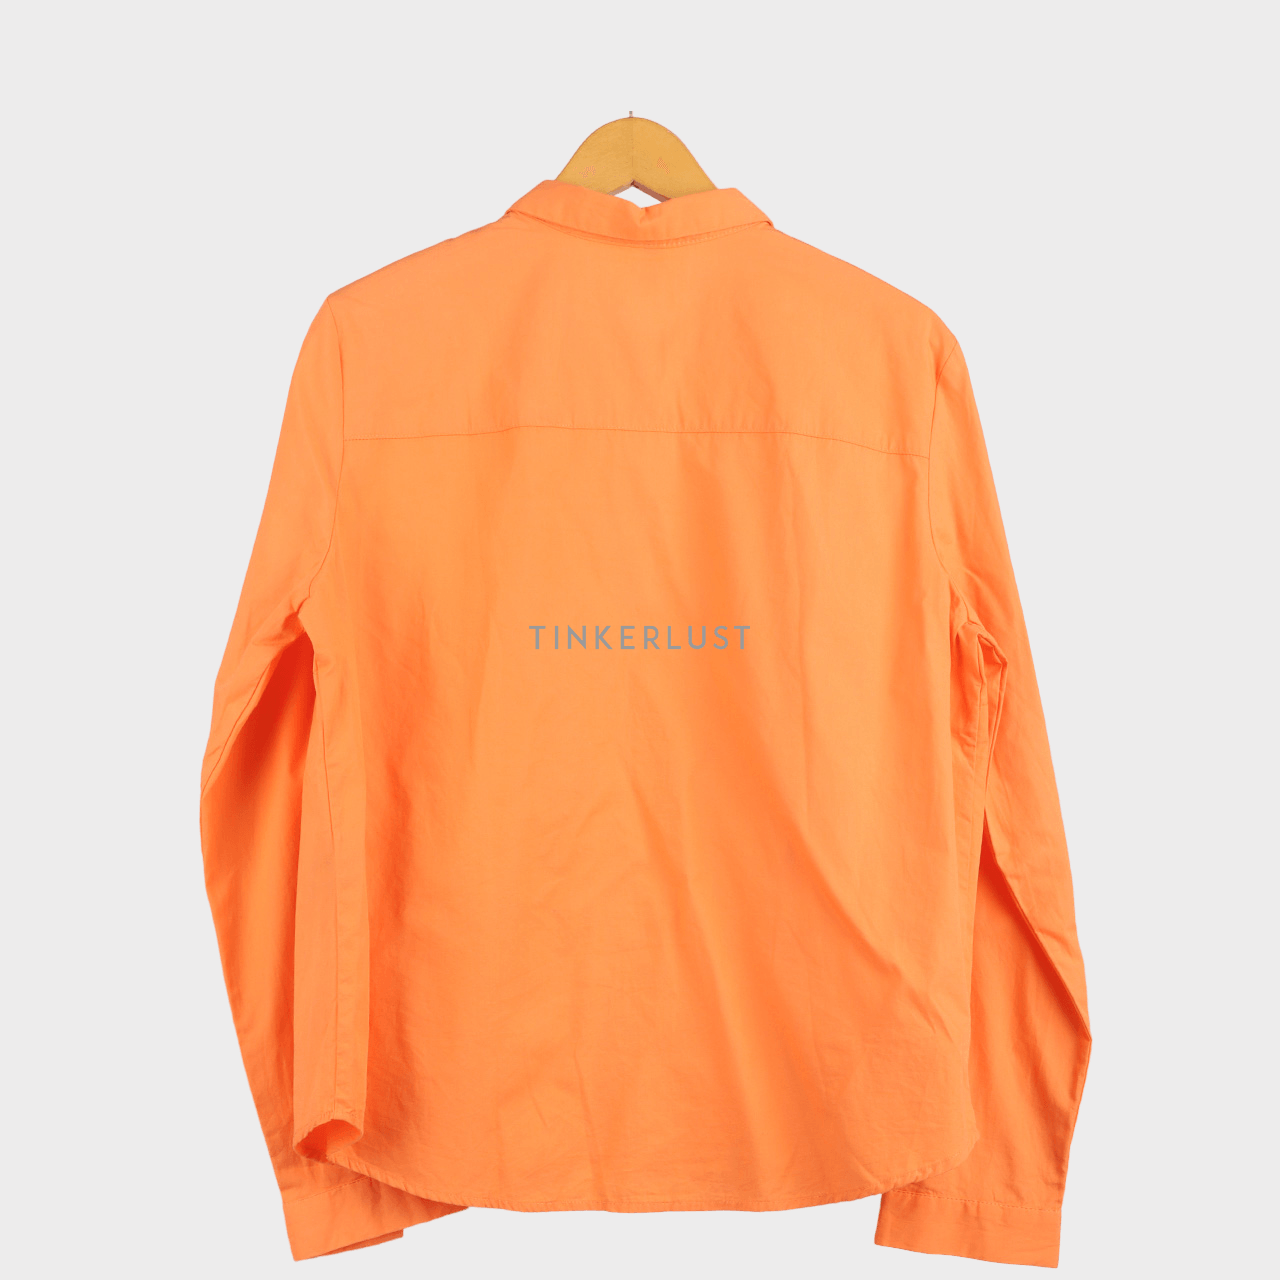 H&M Orange Shirt